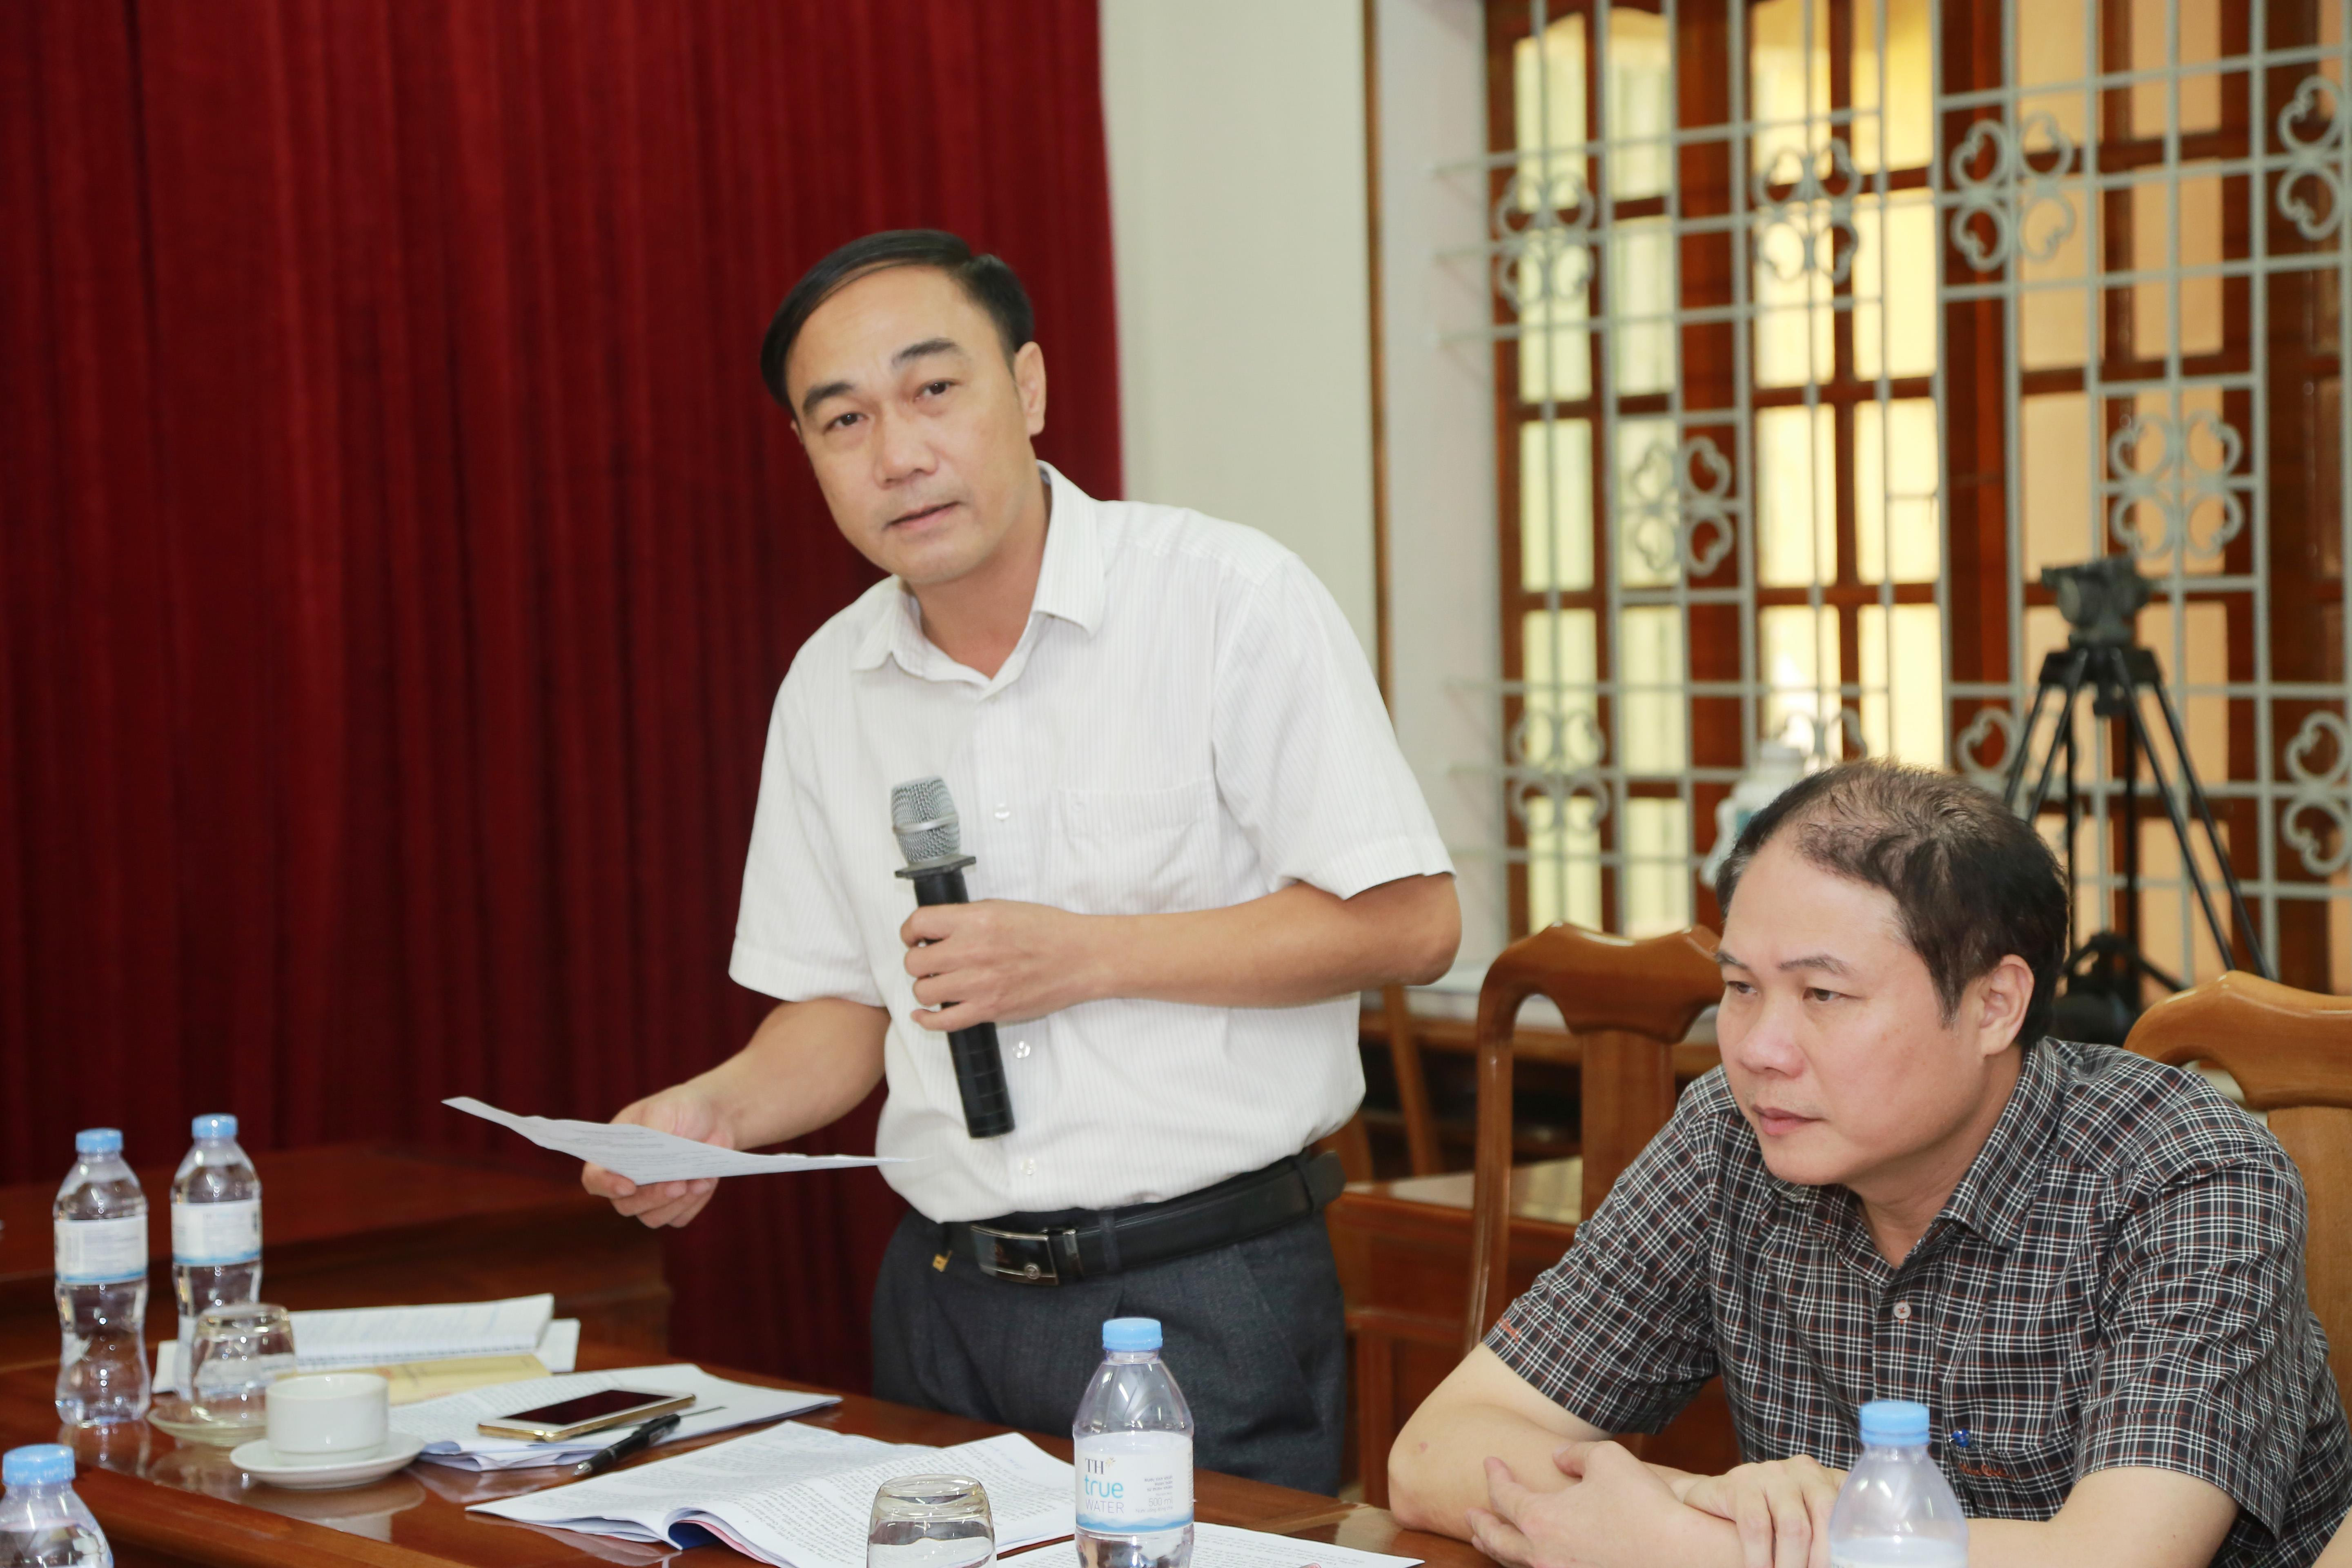 Đồng chí Trần Quốc Khánh - Phó Ban Tuyên giáo Tỉnh ủy phát biểu tại buổi làm việc. Ảnh: Đào Tuấn